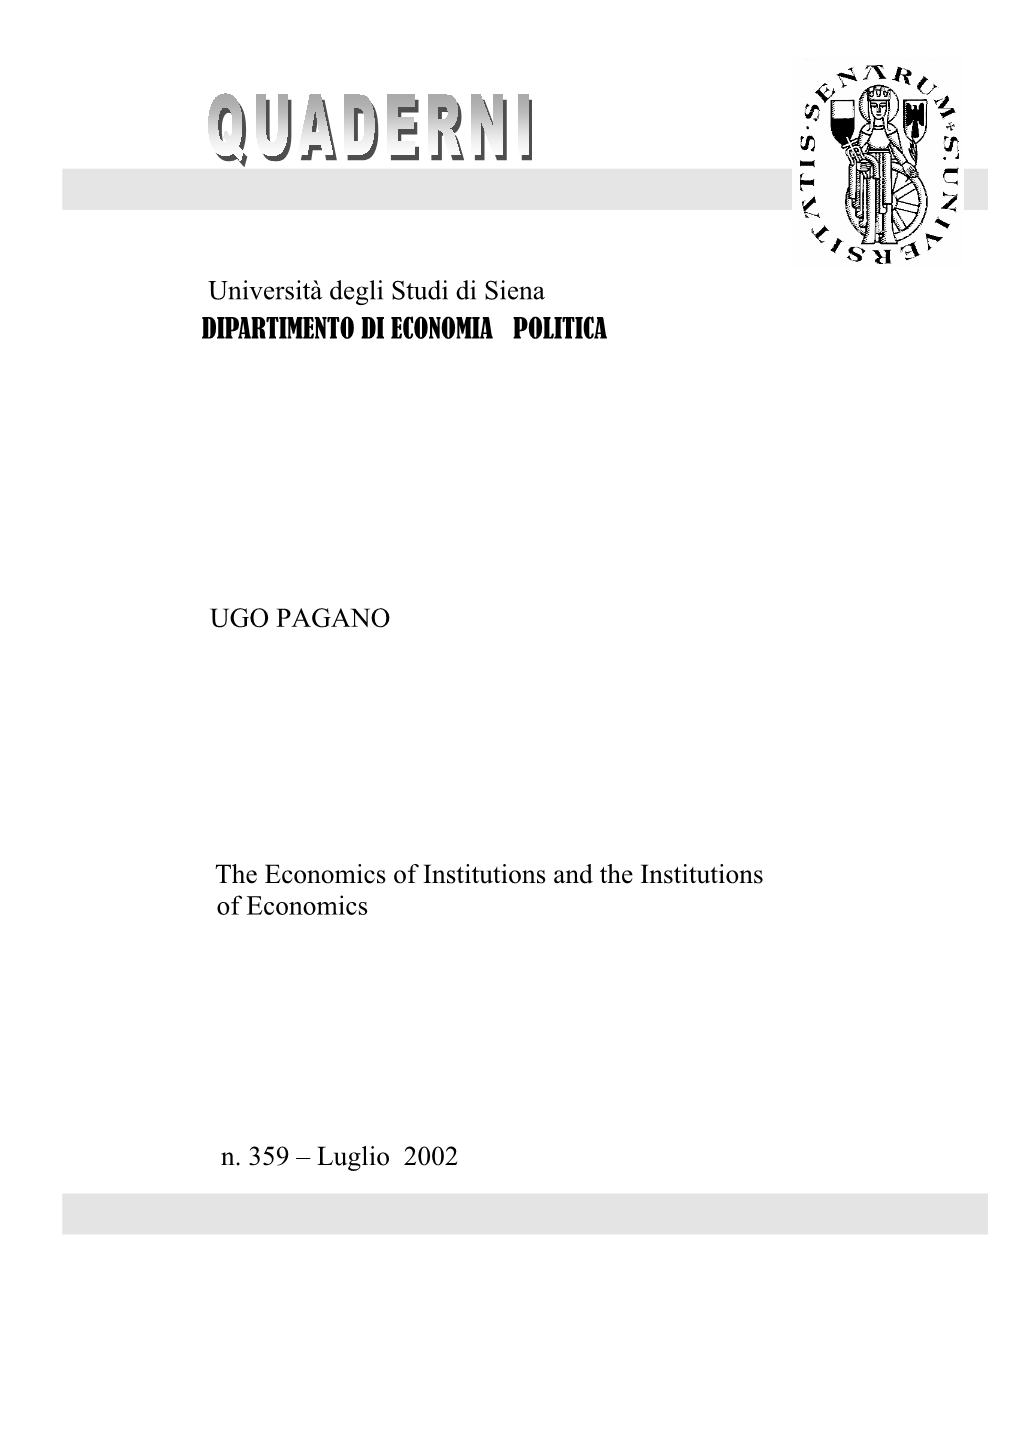 Università Degli Studi Di Siena DIPARTIMENTO DI ECONOMIA POLITICA UGO PAGANO the Economics of Institutions and the Institutio